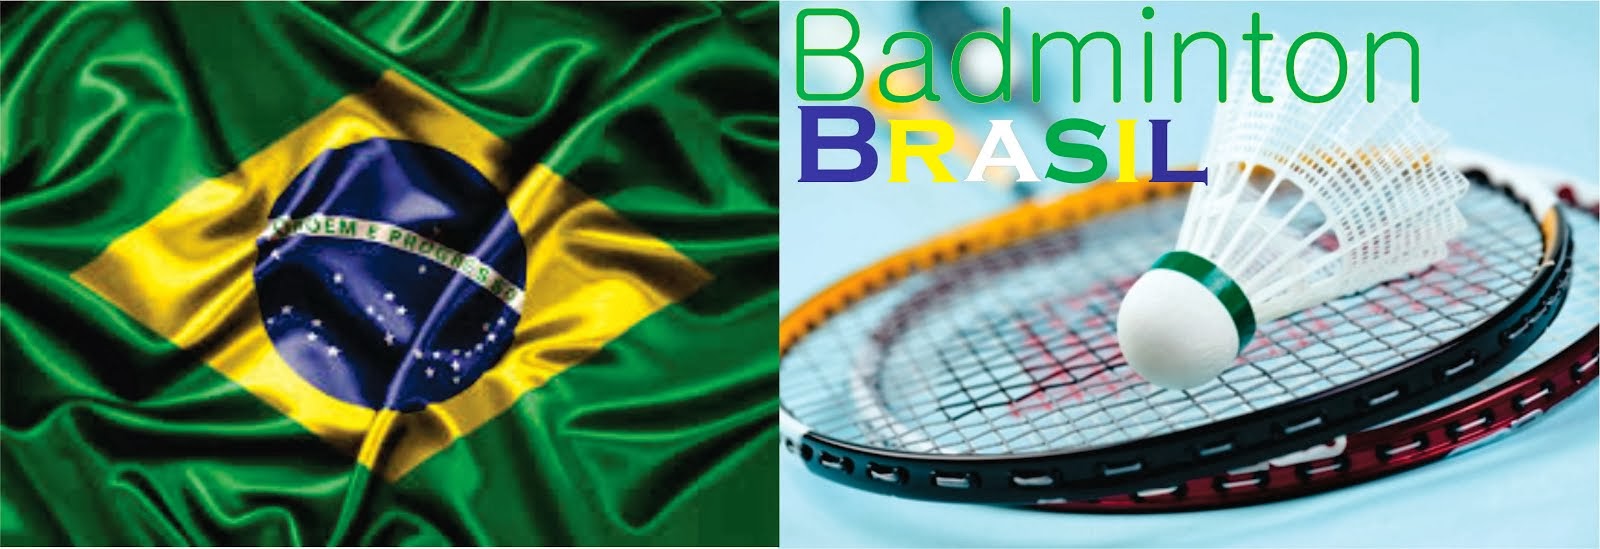 Badminton Brasil